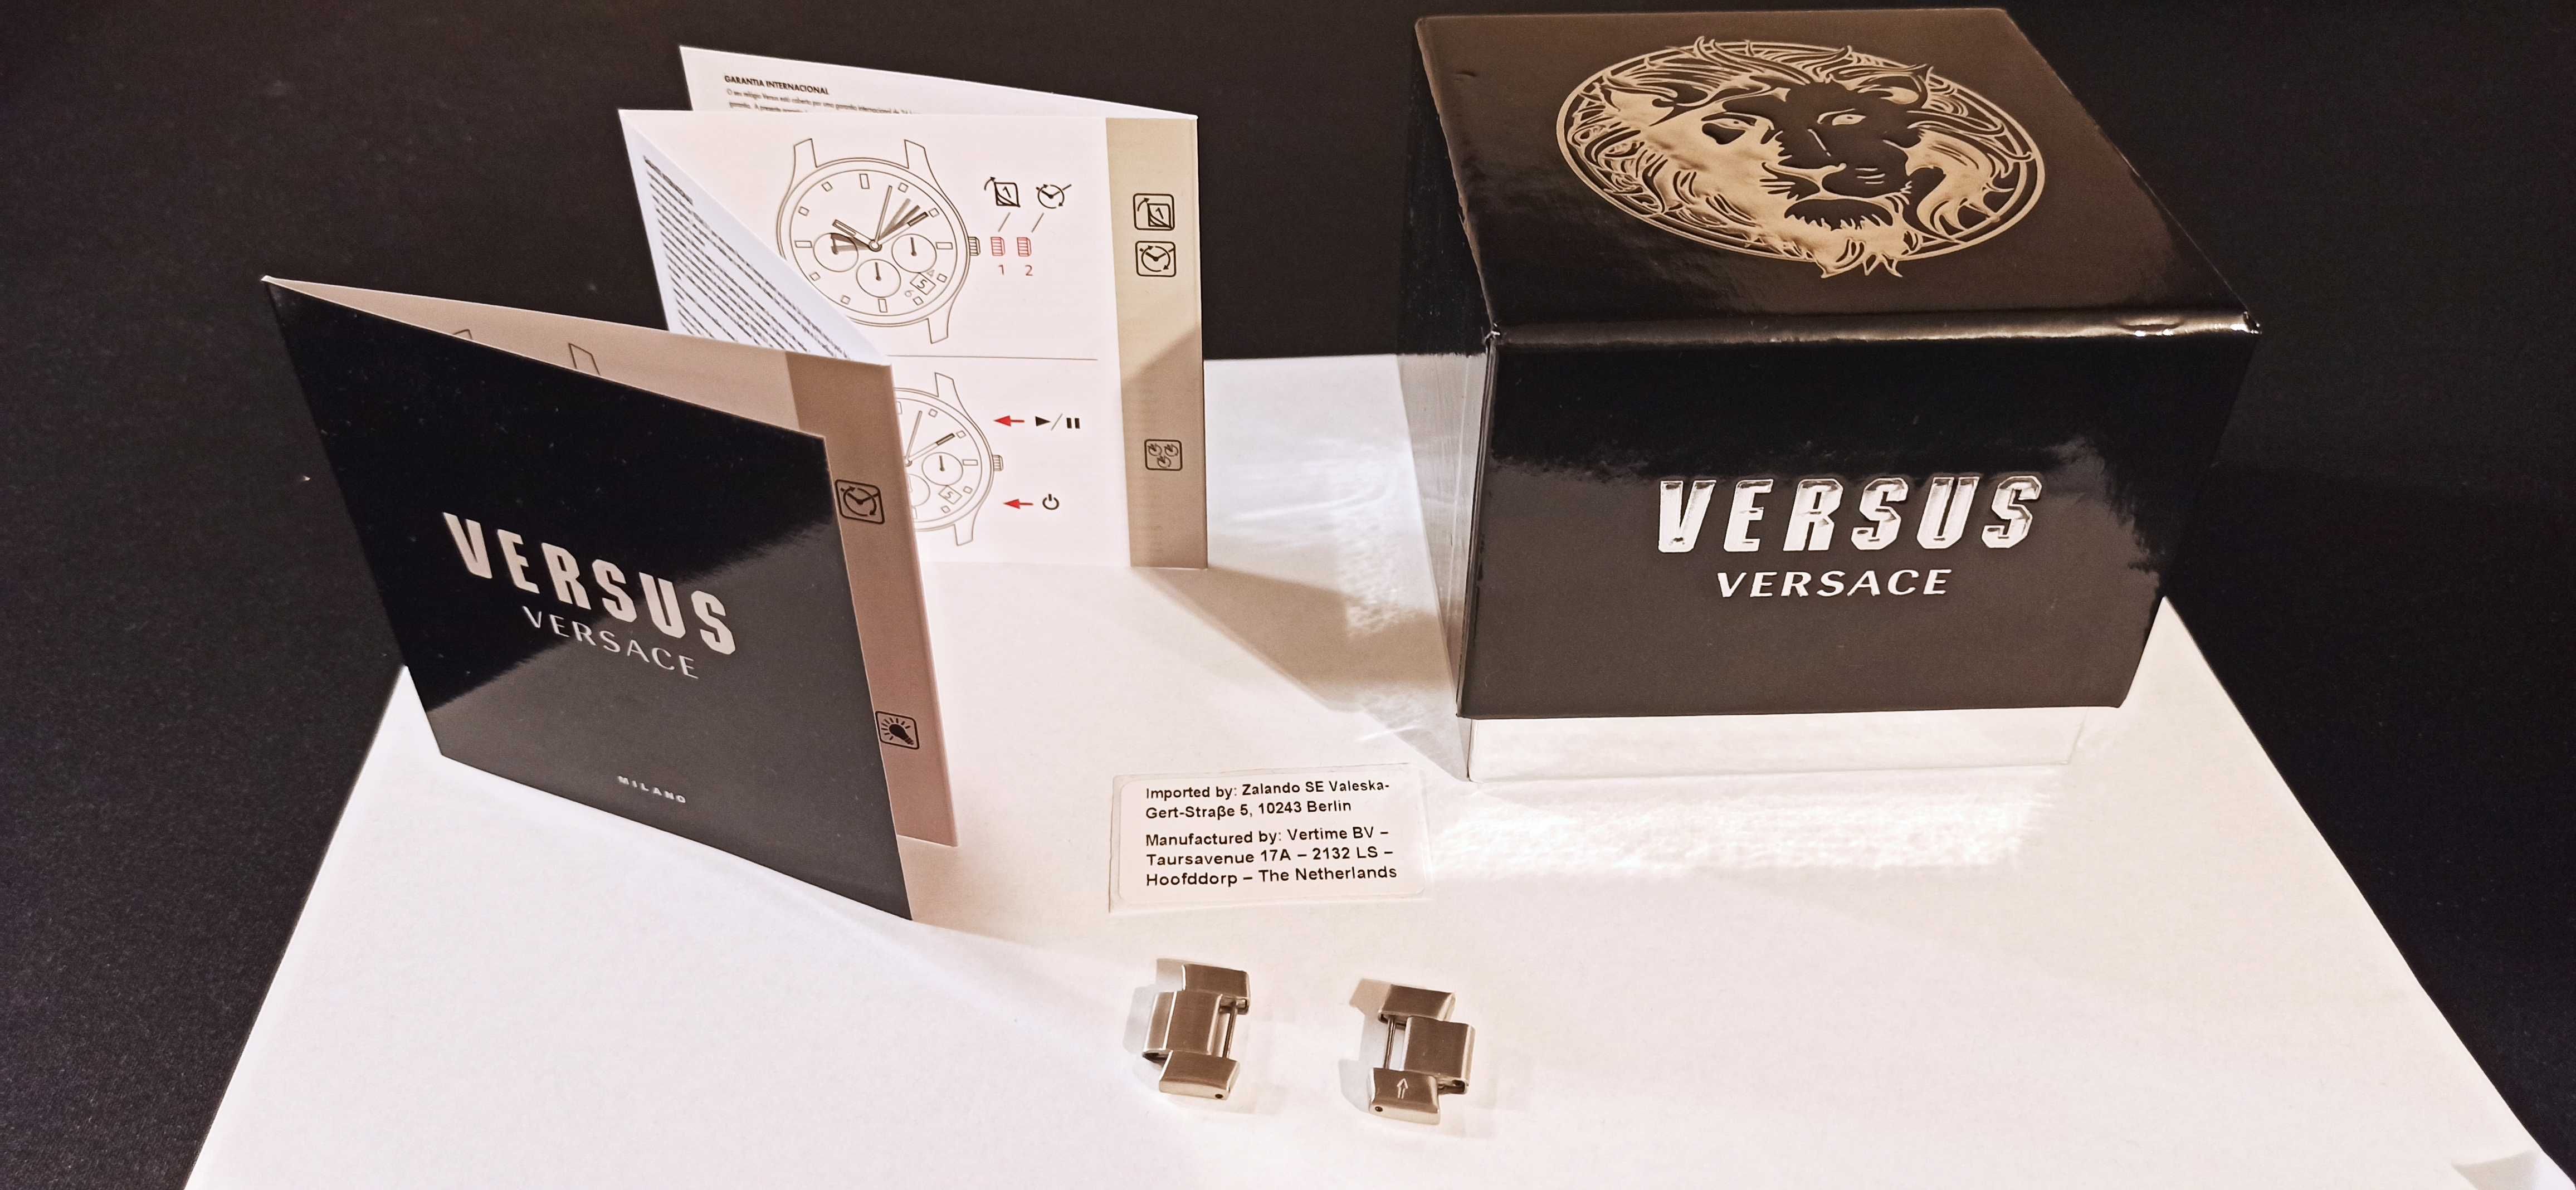 Zegarek Versus Versace męski srebrny bransoletka.